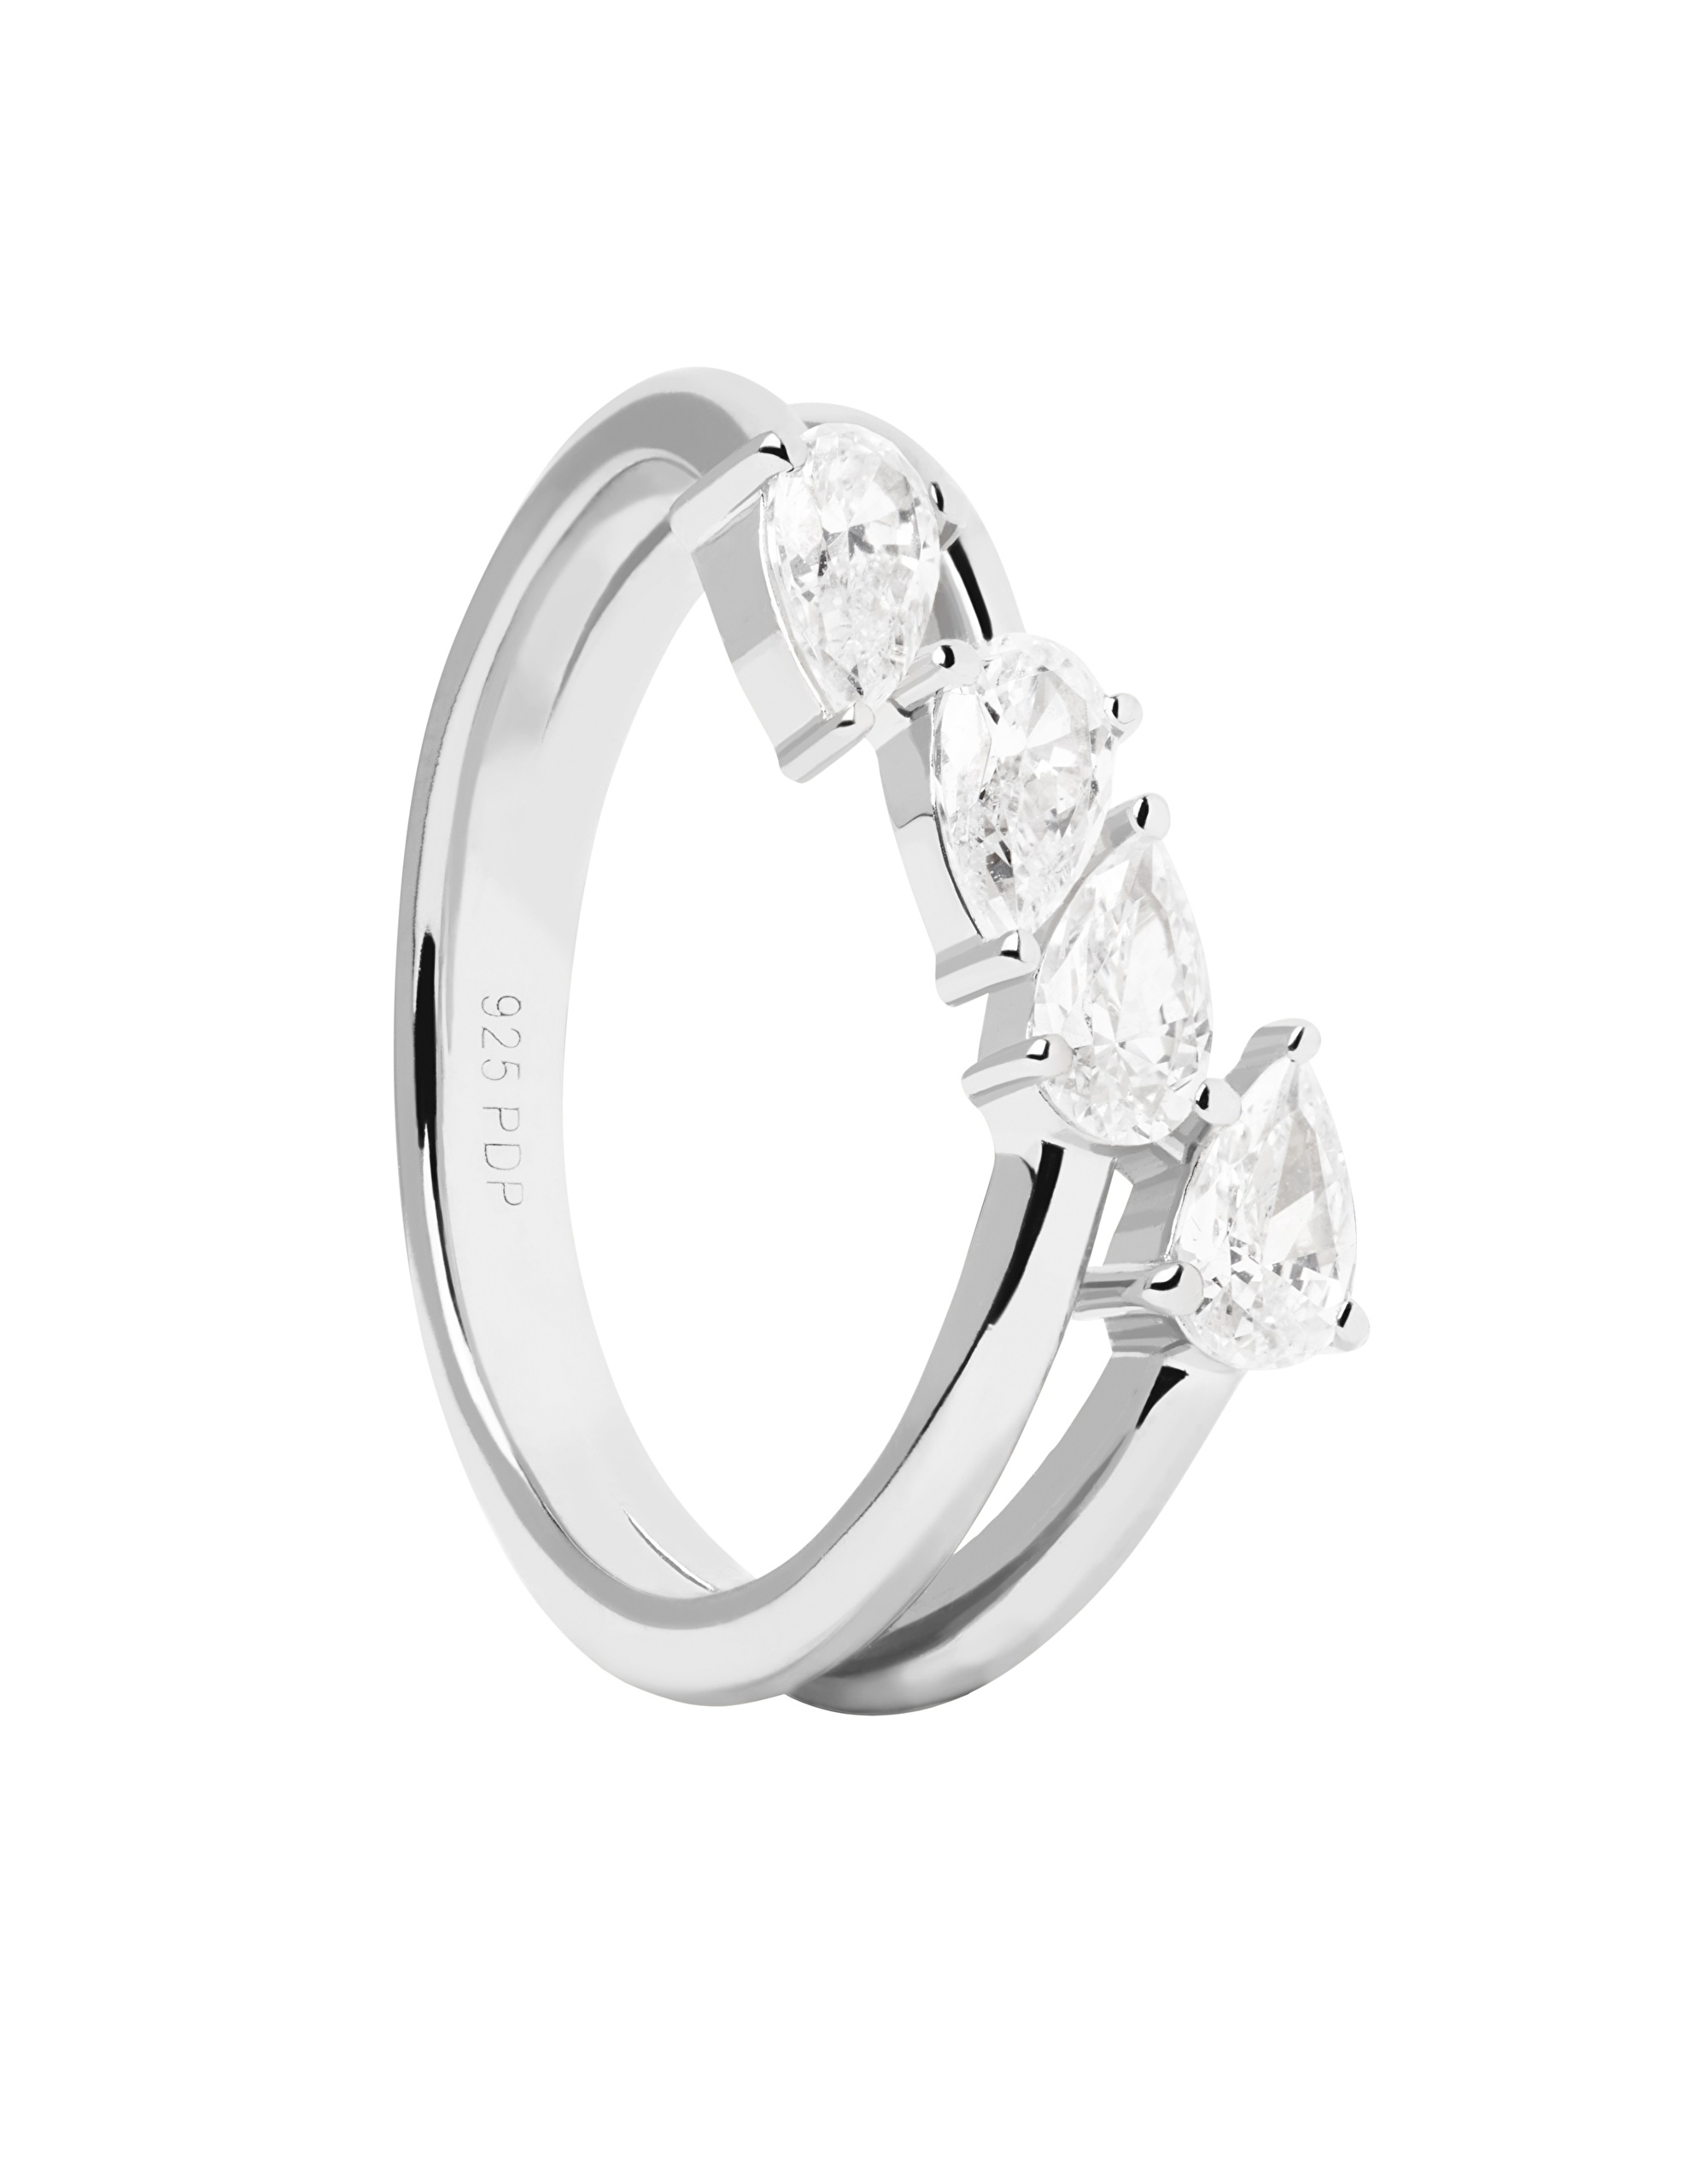 PDPAOLA Blyštivý stříbrný prsten se zirkony Terra Essentials AN02-861 50 mm